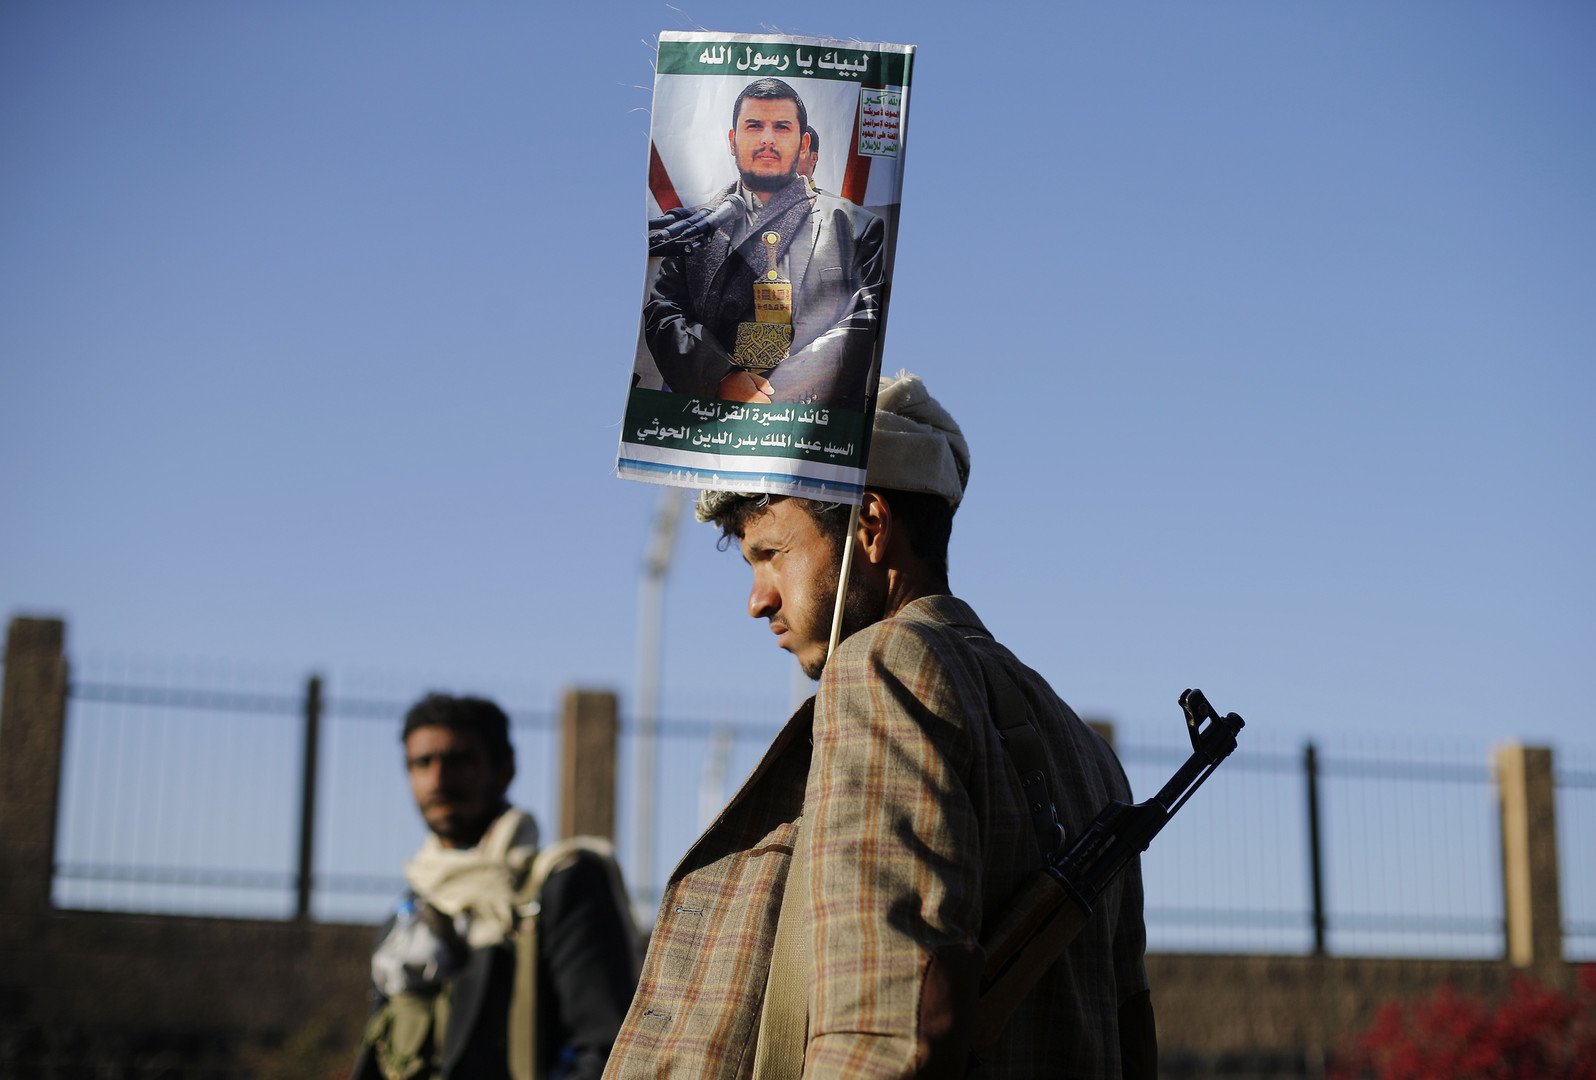 القوى السياسية في اليمن تفشل في الاتفاق على تشكيل مجلس رئاسي